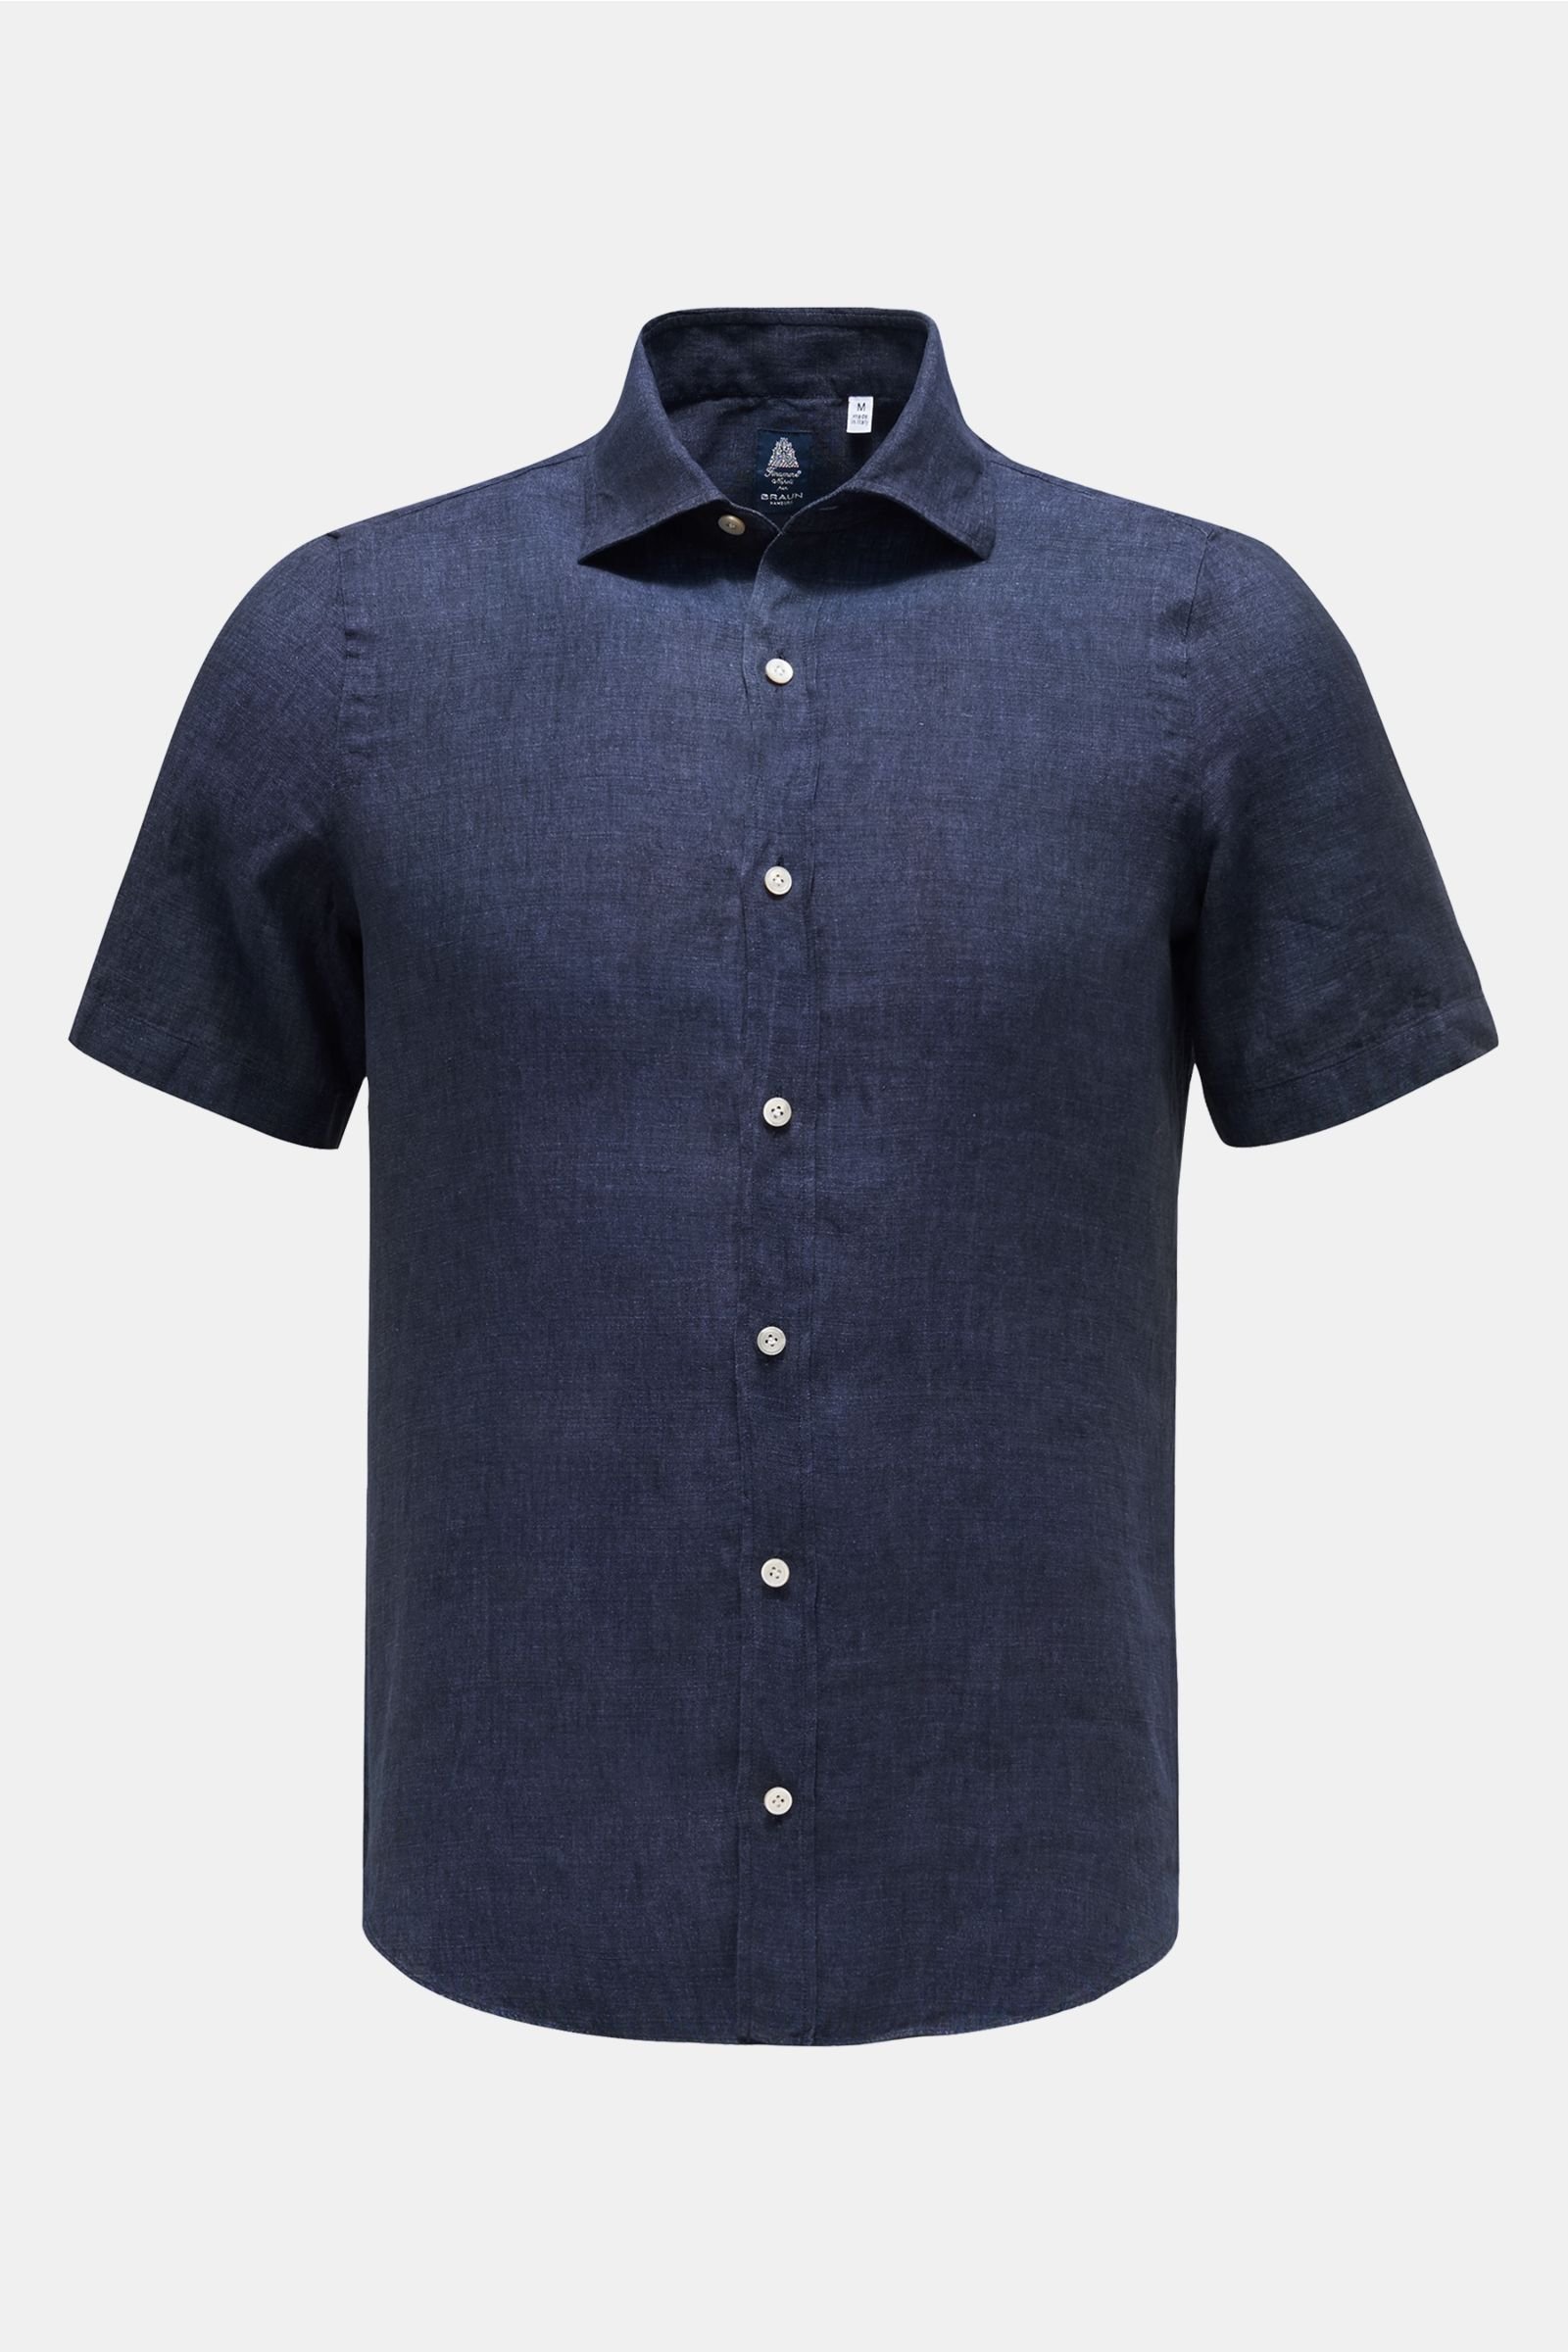 Linen short sleeve shirt 'Luigi Giglio' narrow collar navy